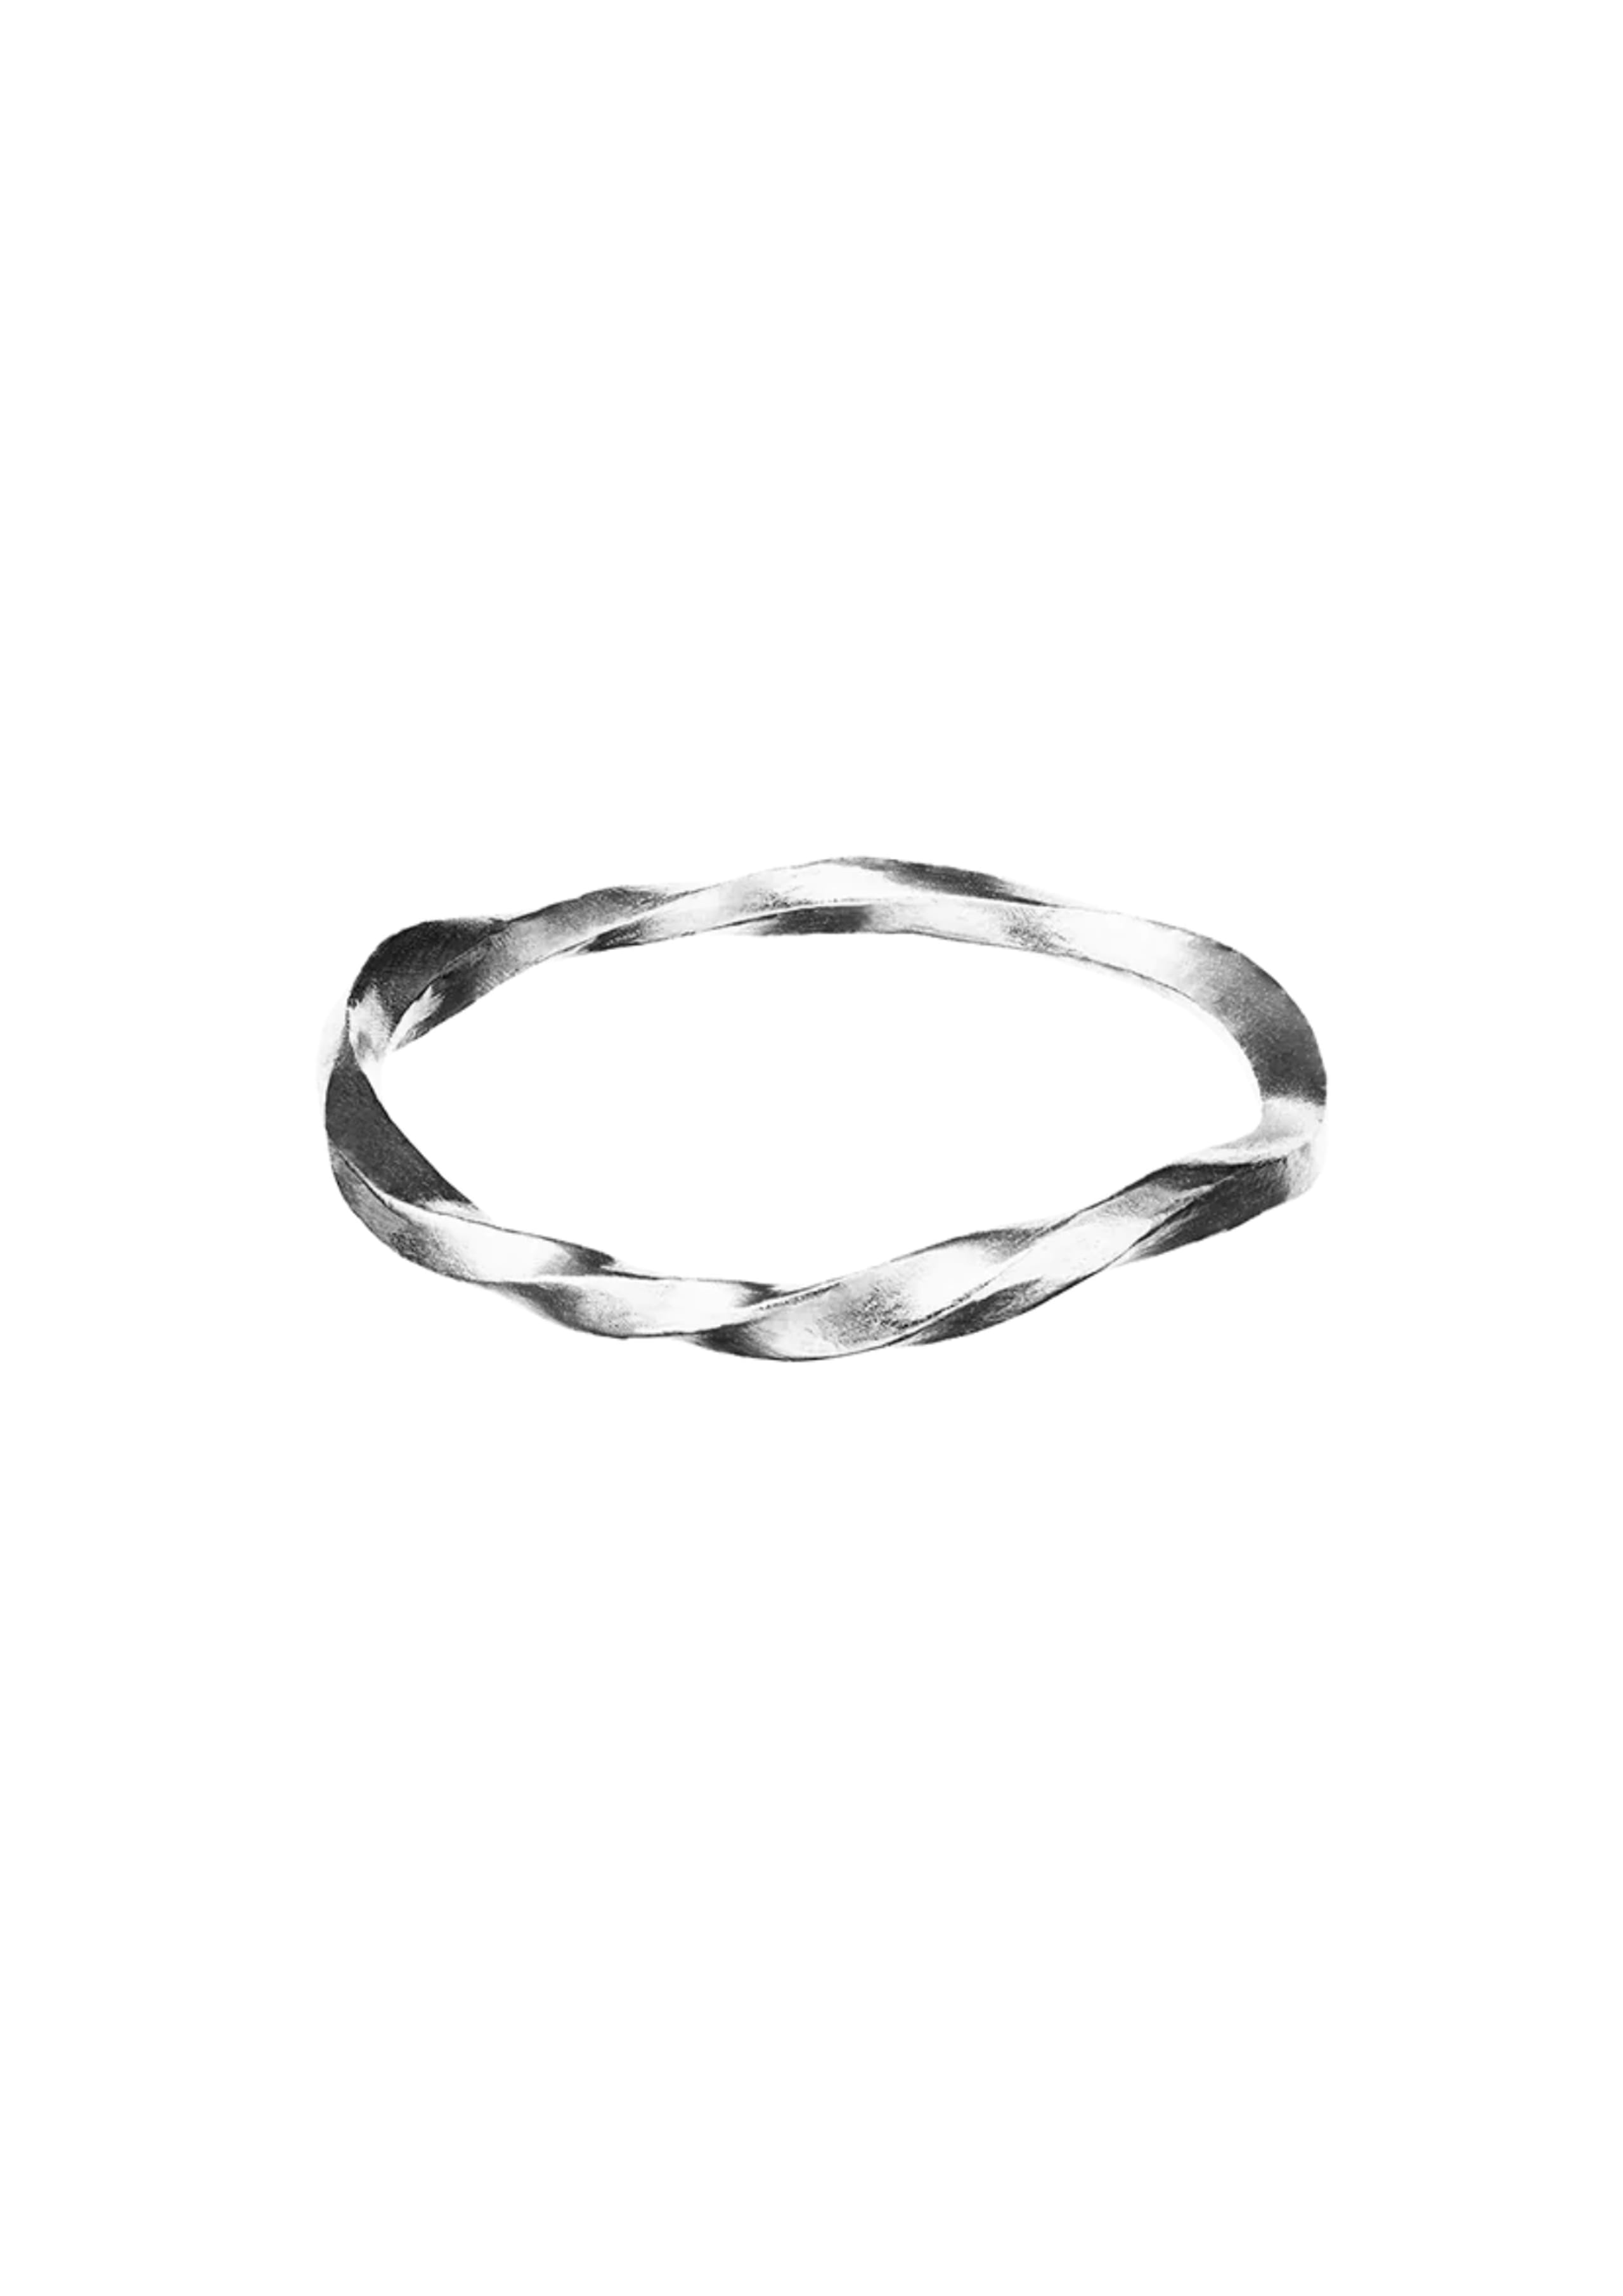 Maanesten - Ring - Siv Ring - Silver